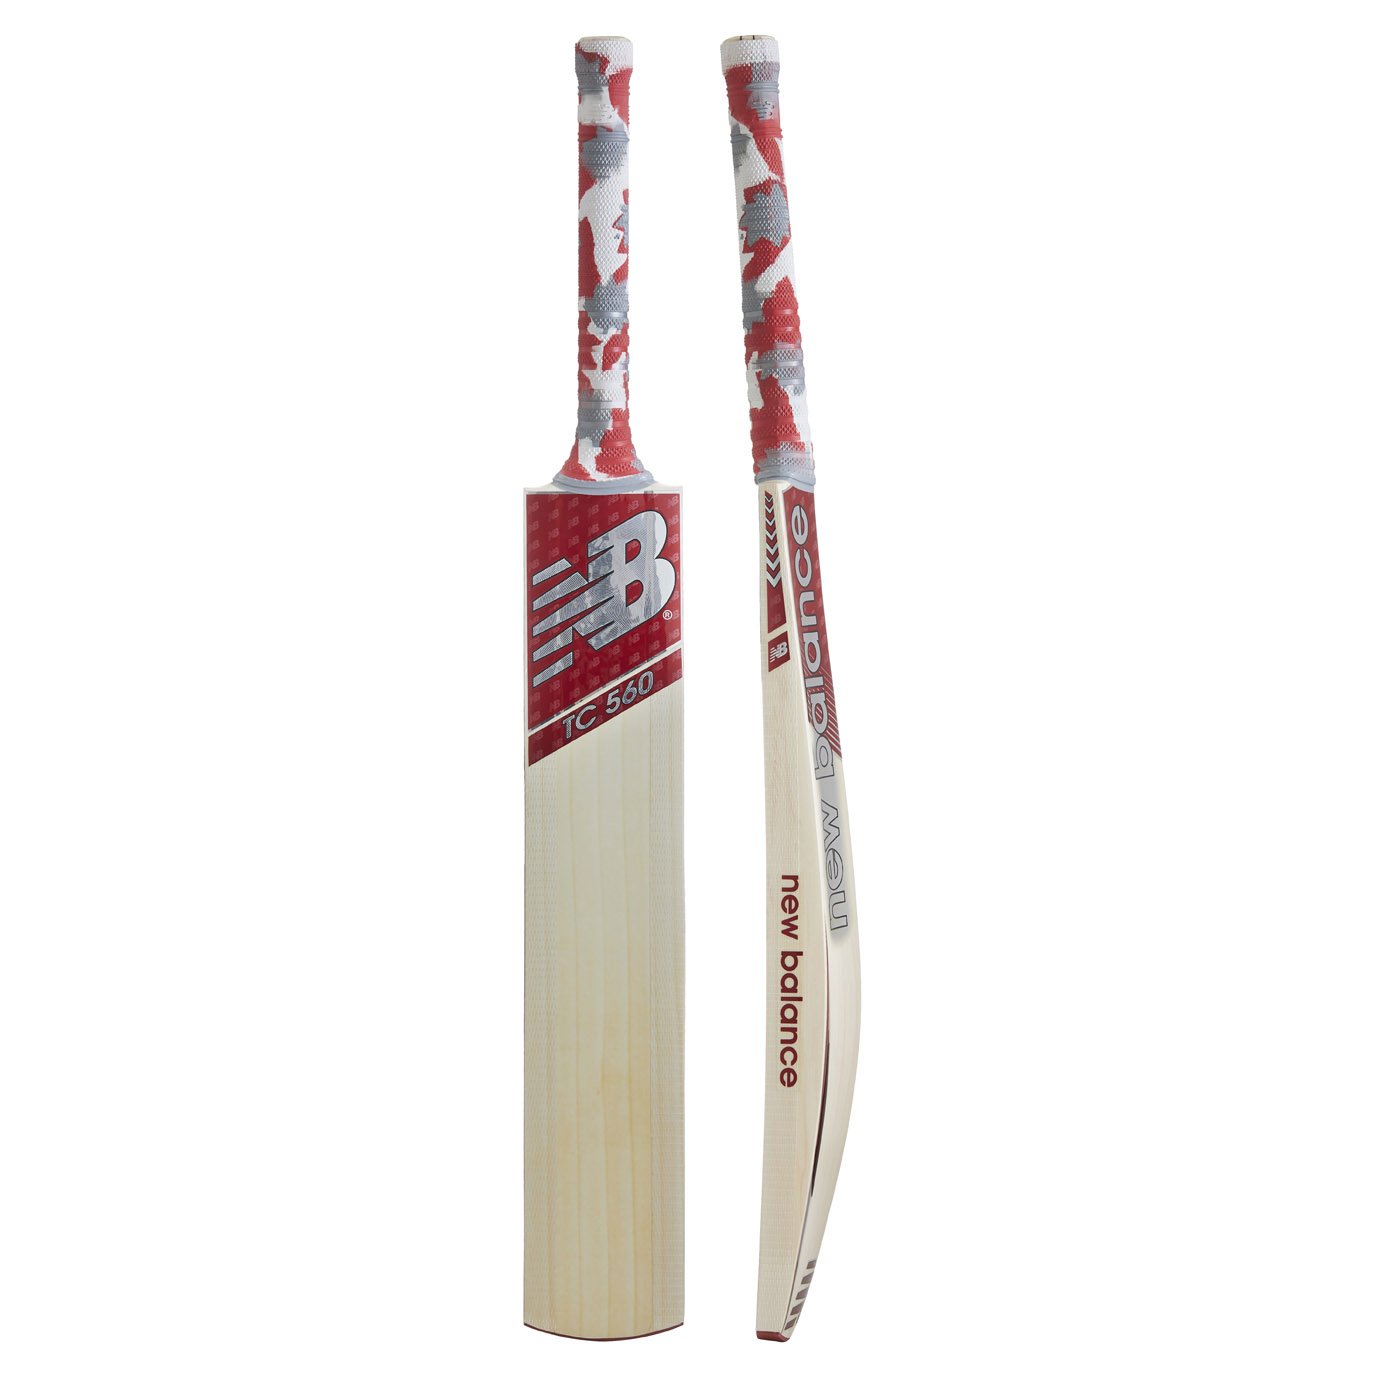 TC560 Bat (18/19) - Cricket Bats 